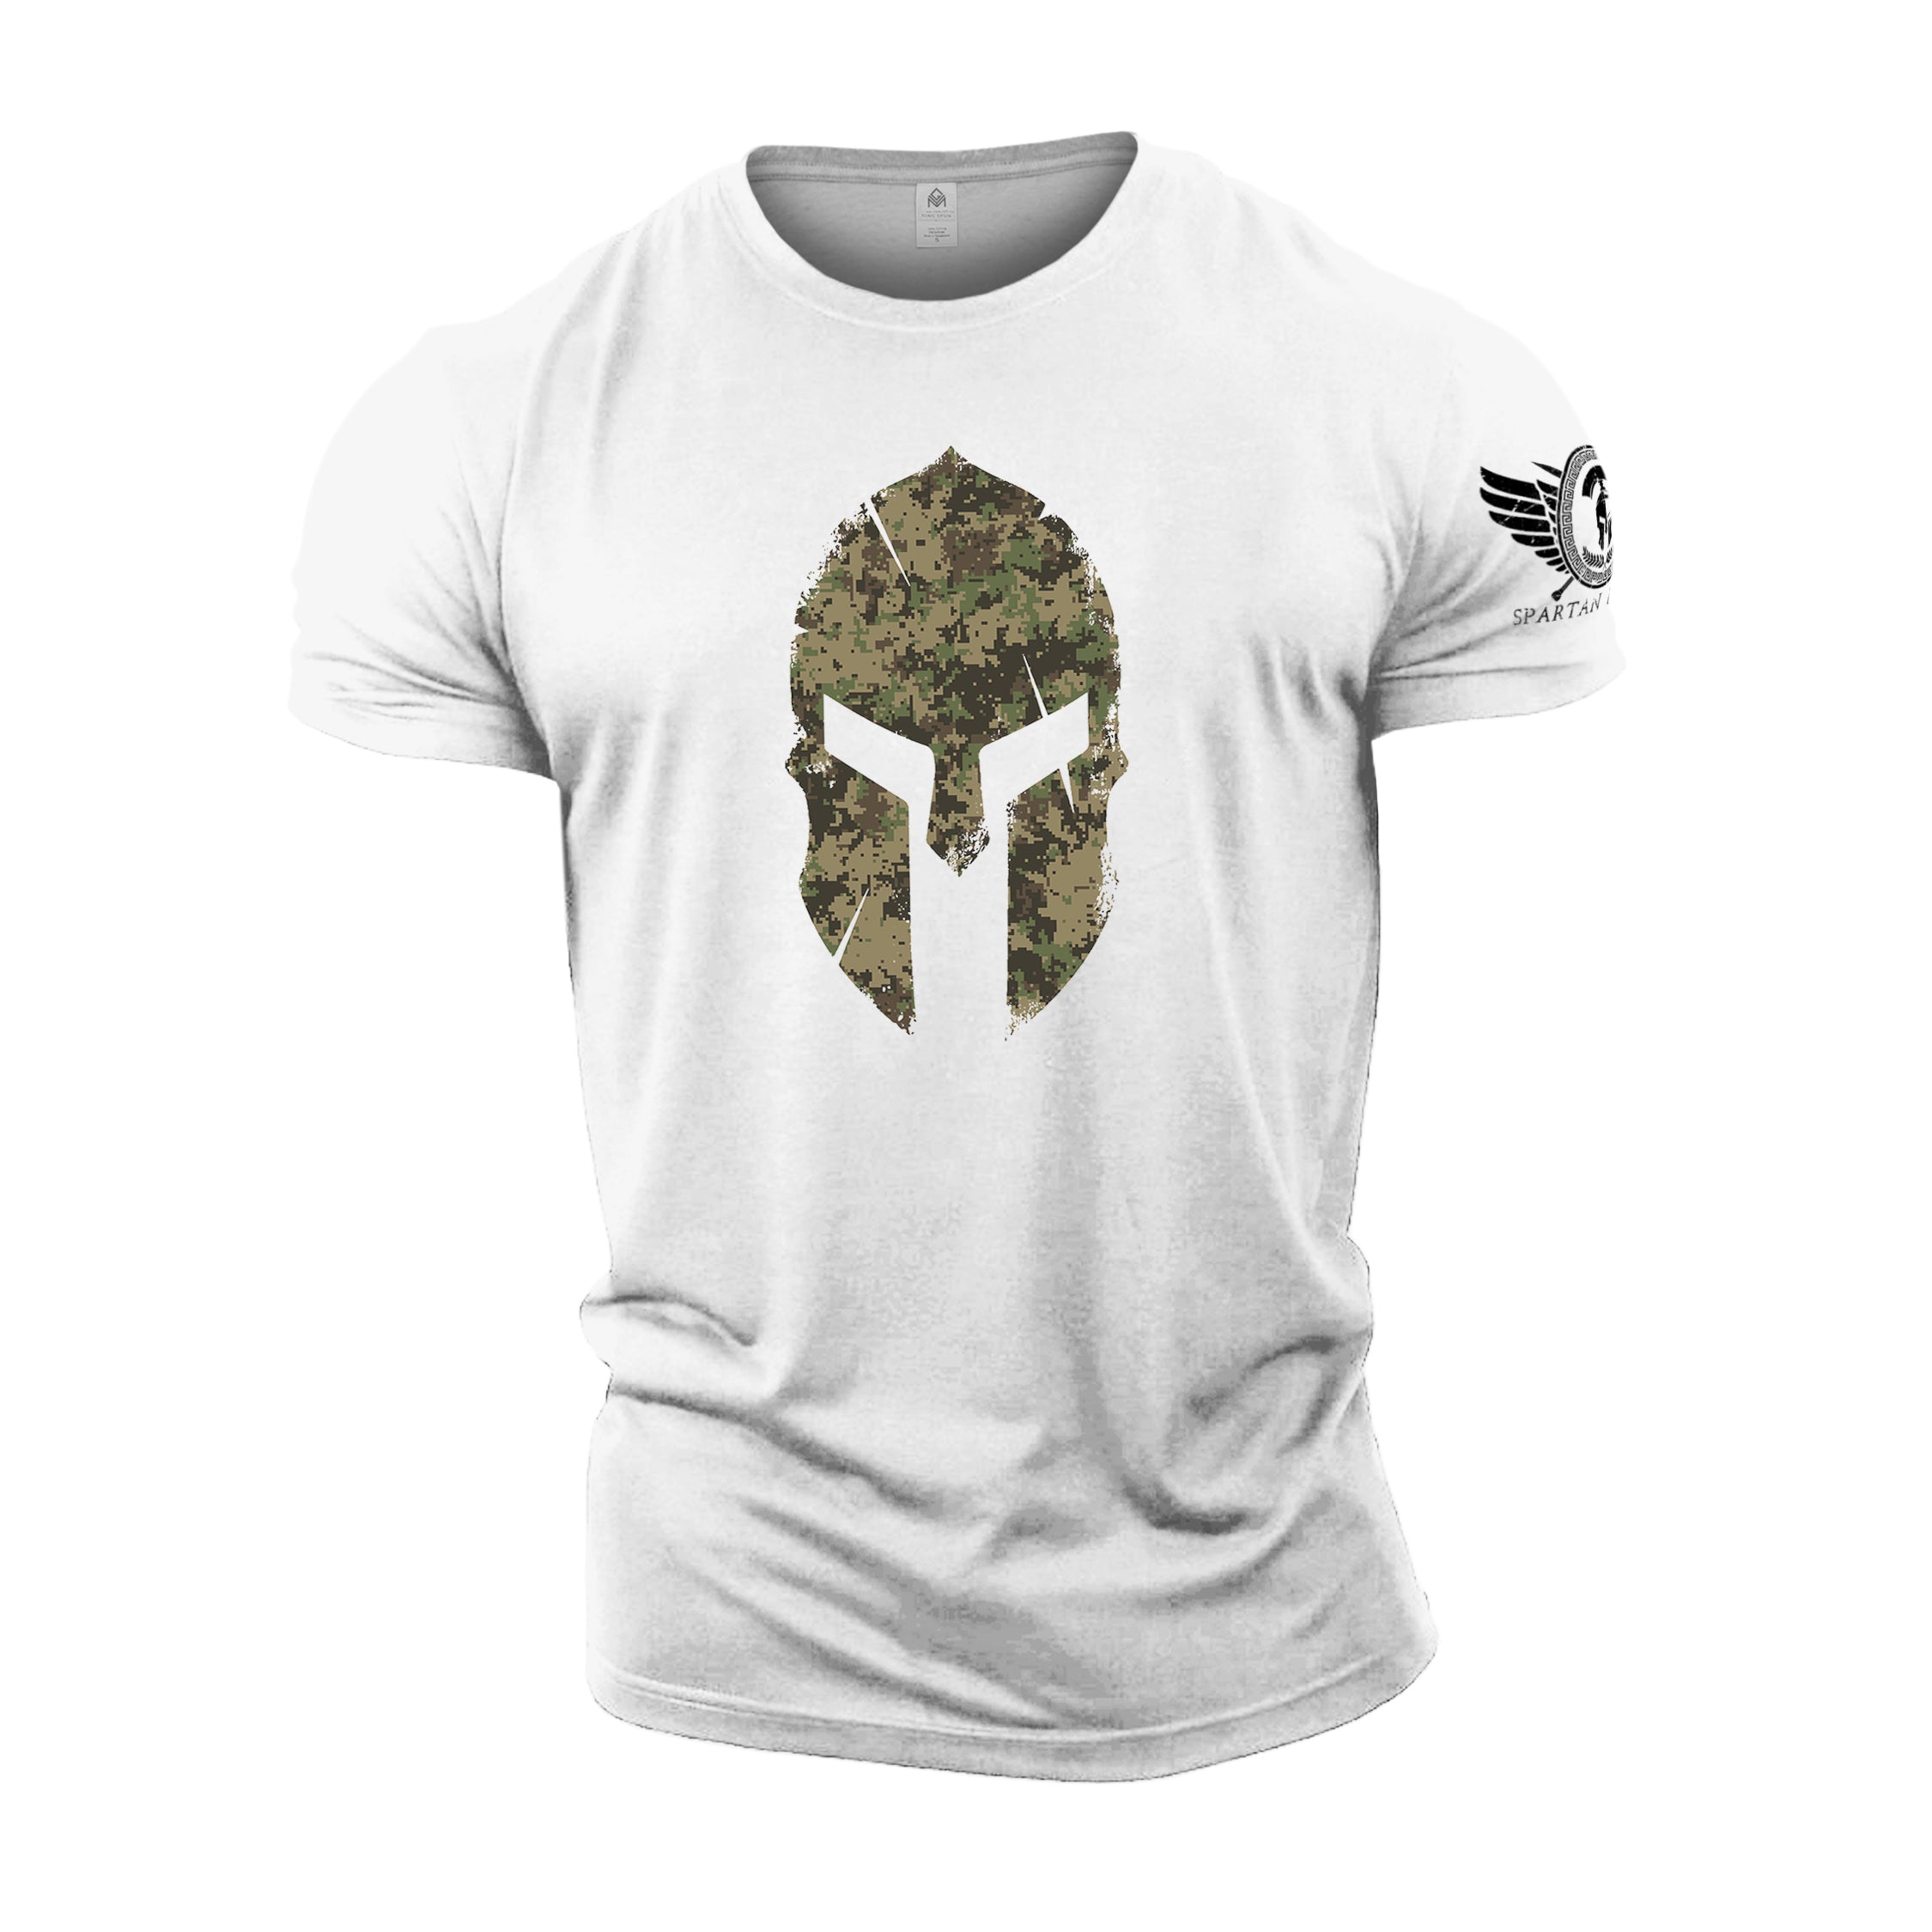 Spartan Helmet Woodland Camo - Spartan Forged - Gym T-Shirt